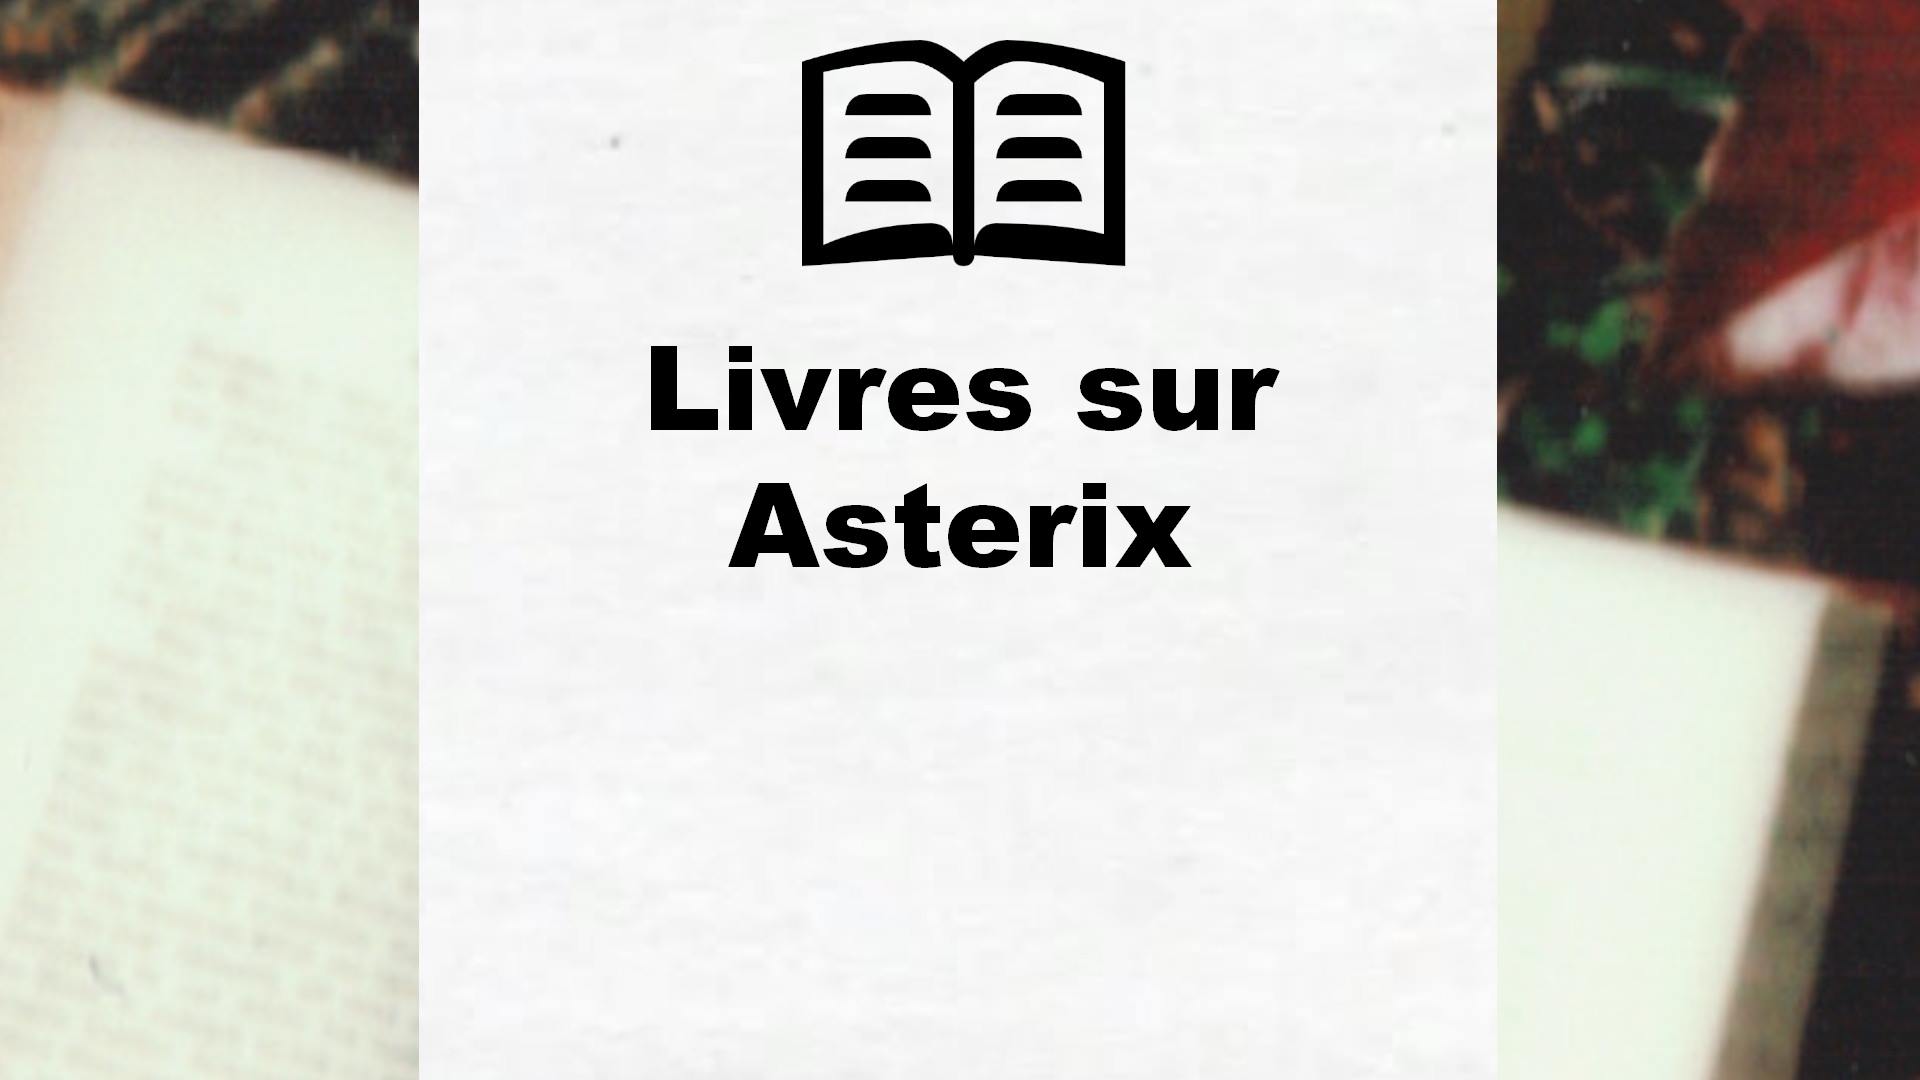 Livres sur Asterix